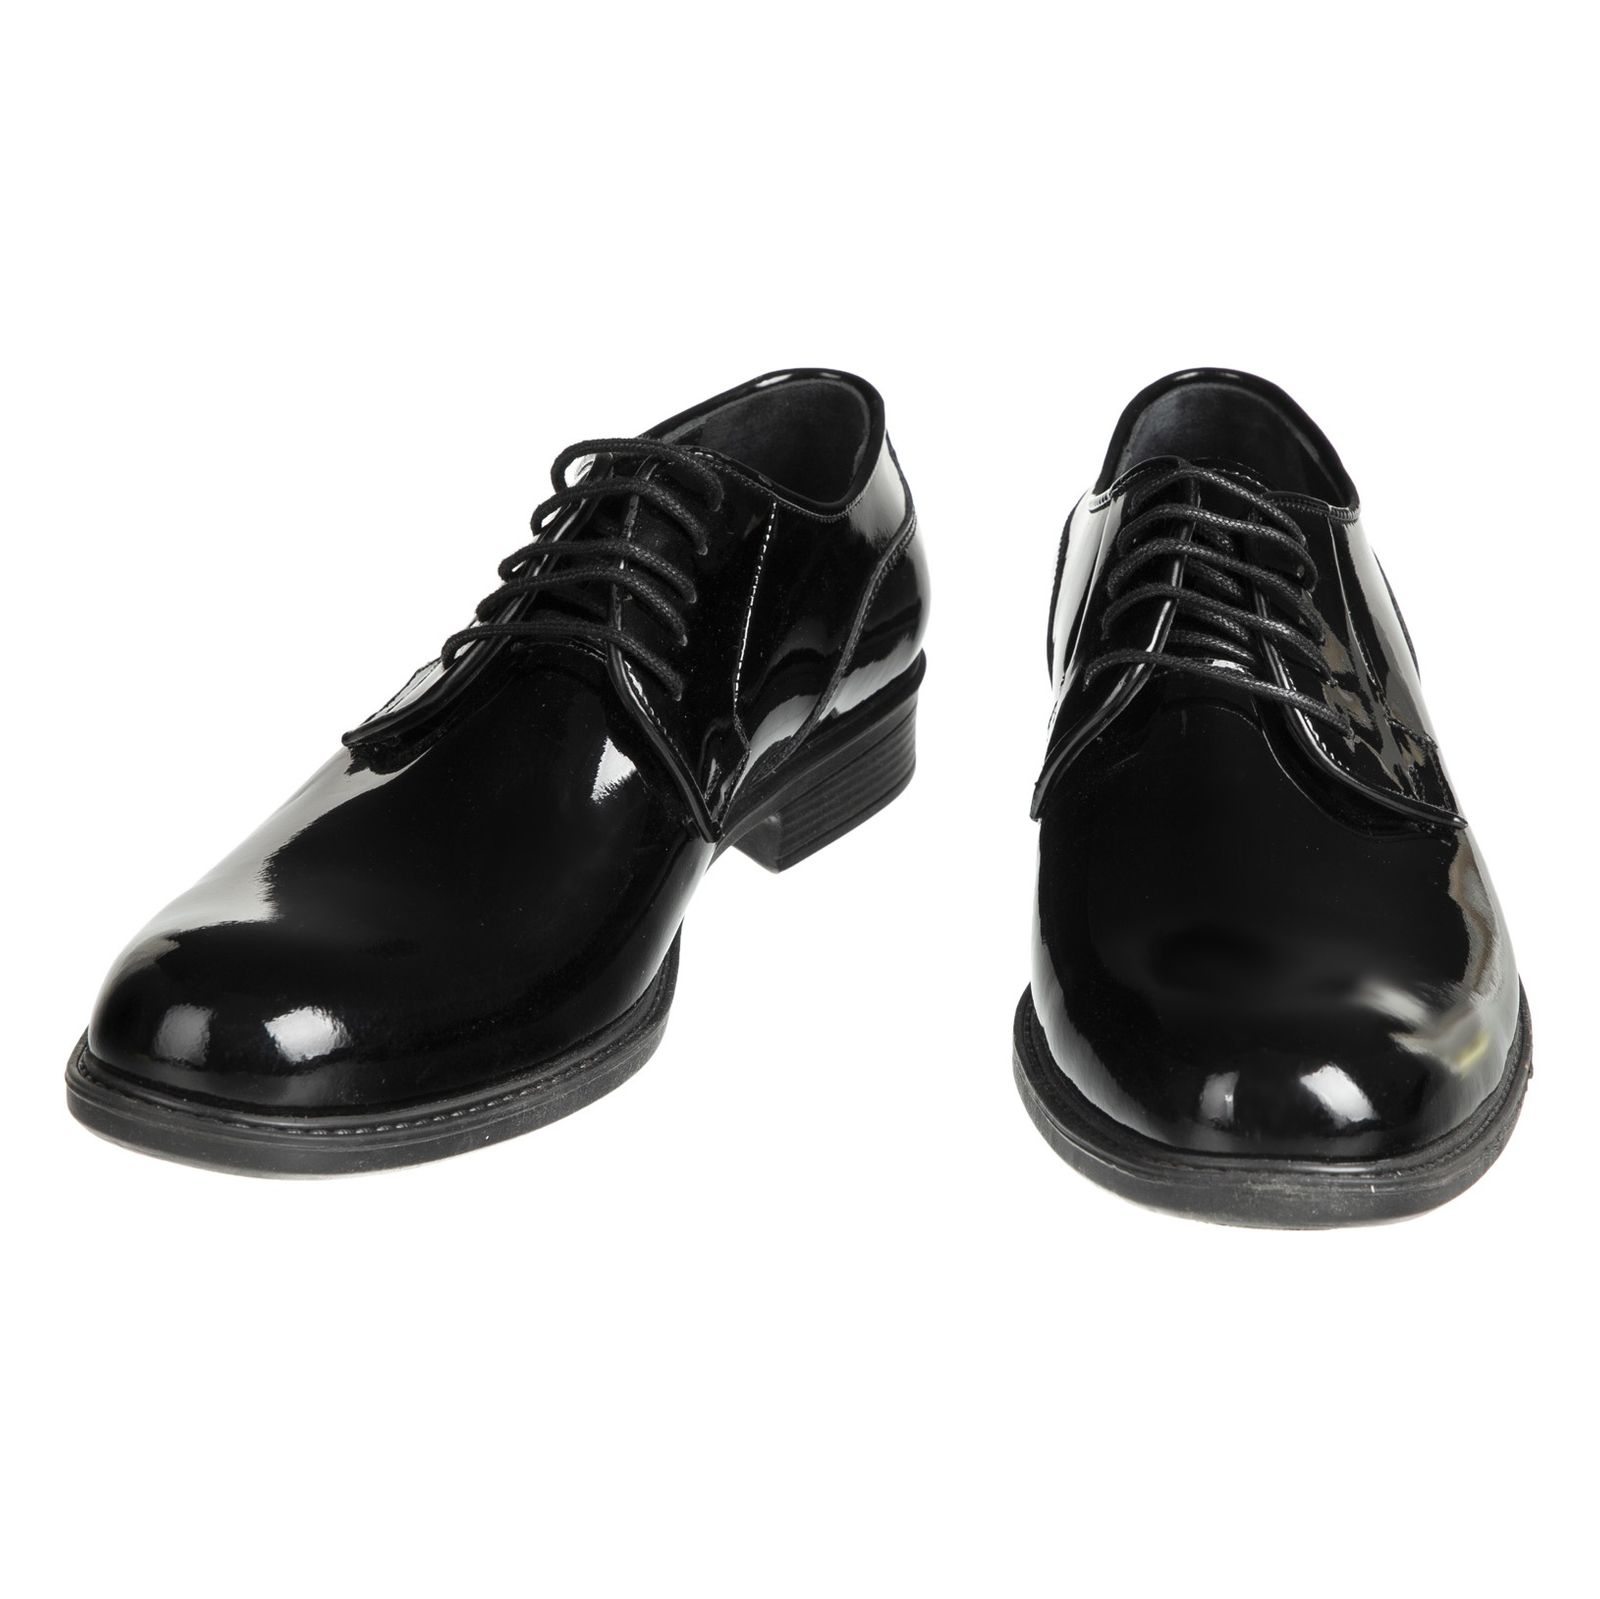 کفش مردانه دلفارد مدل 7219i503-101 - مشکی - 4